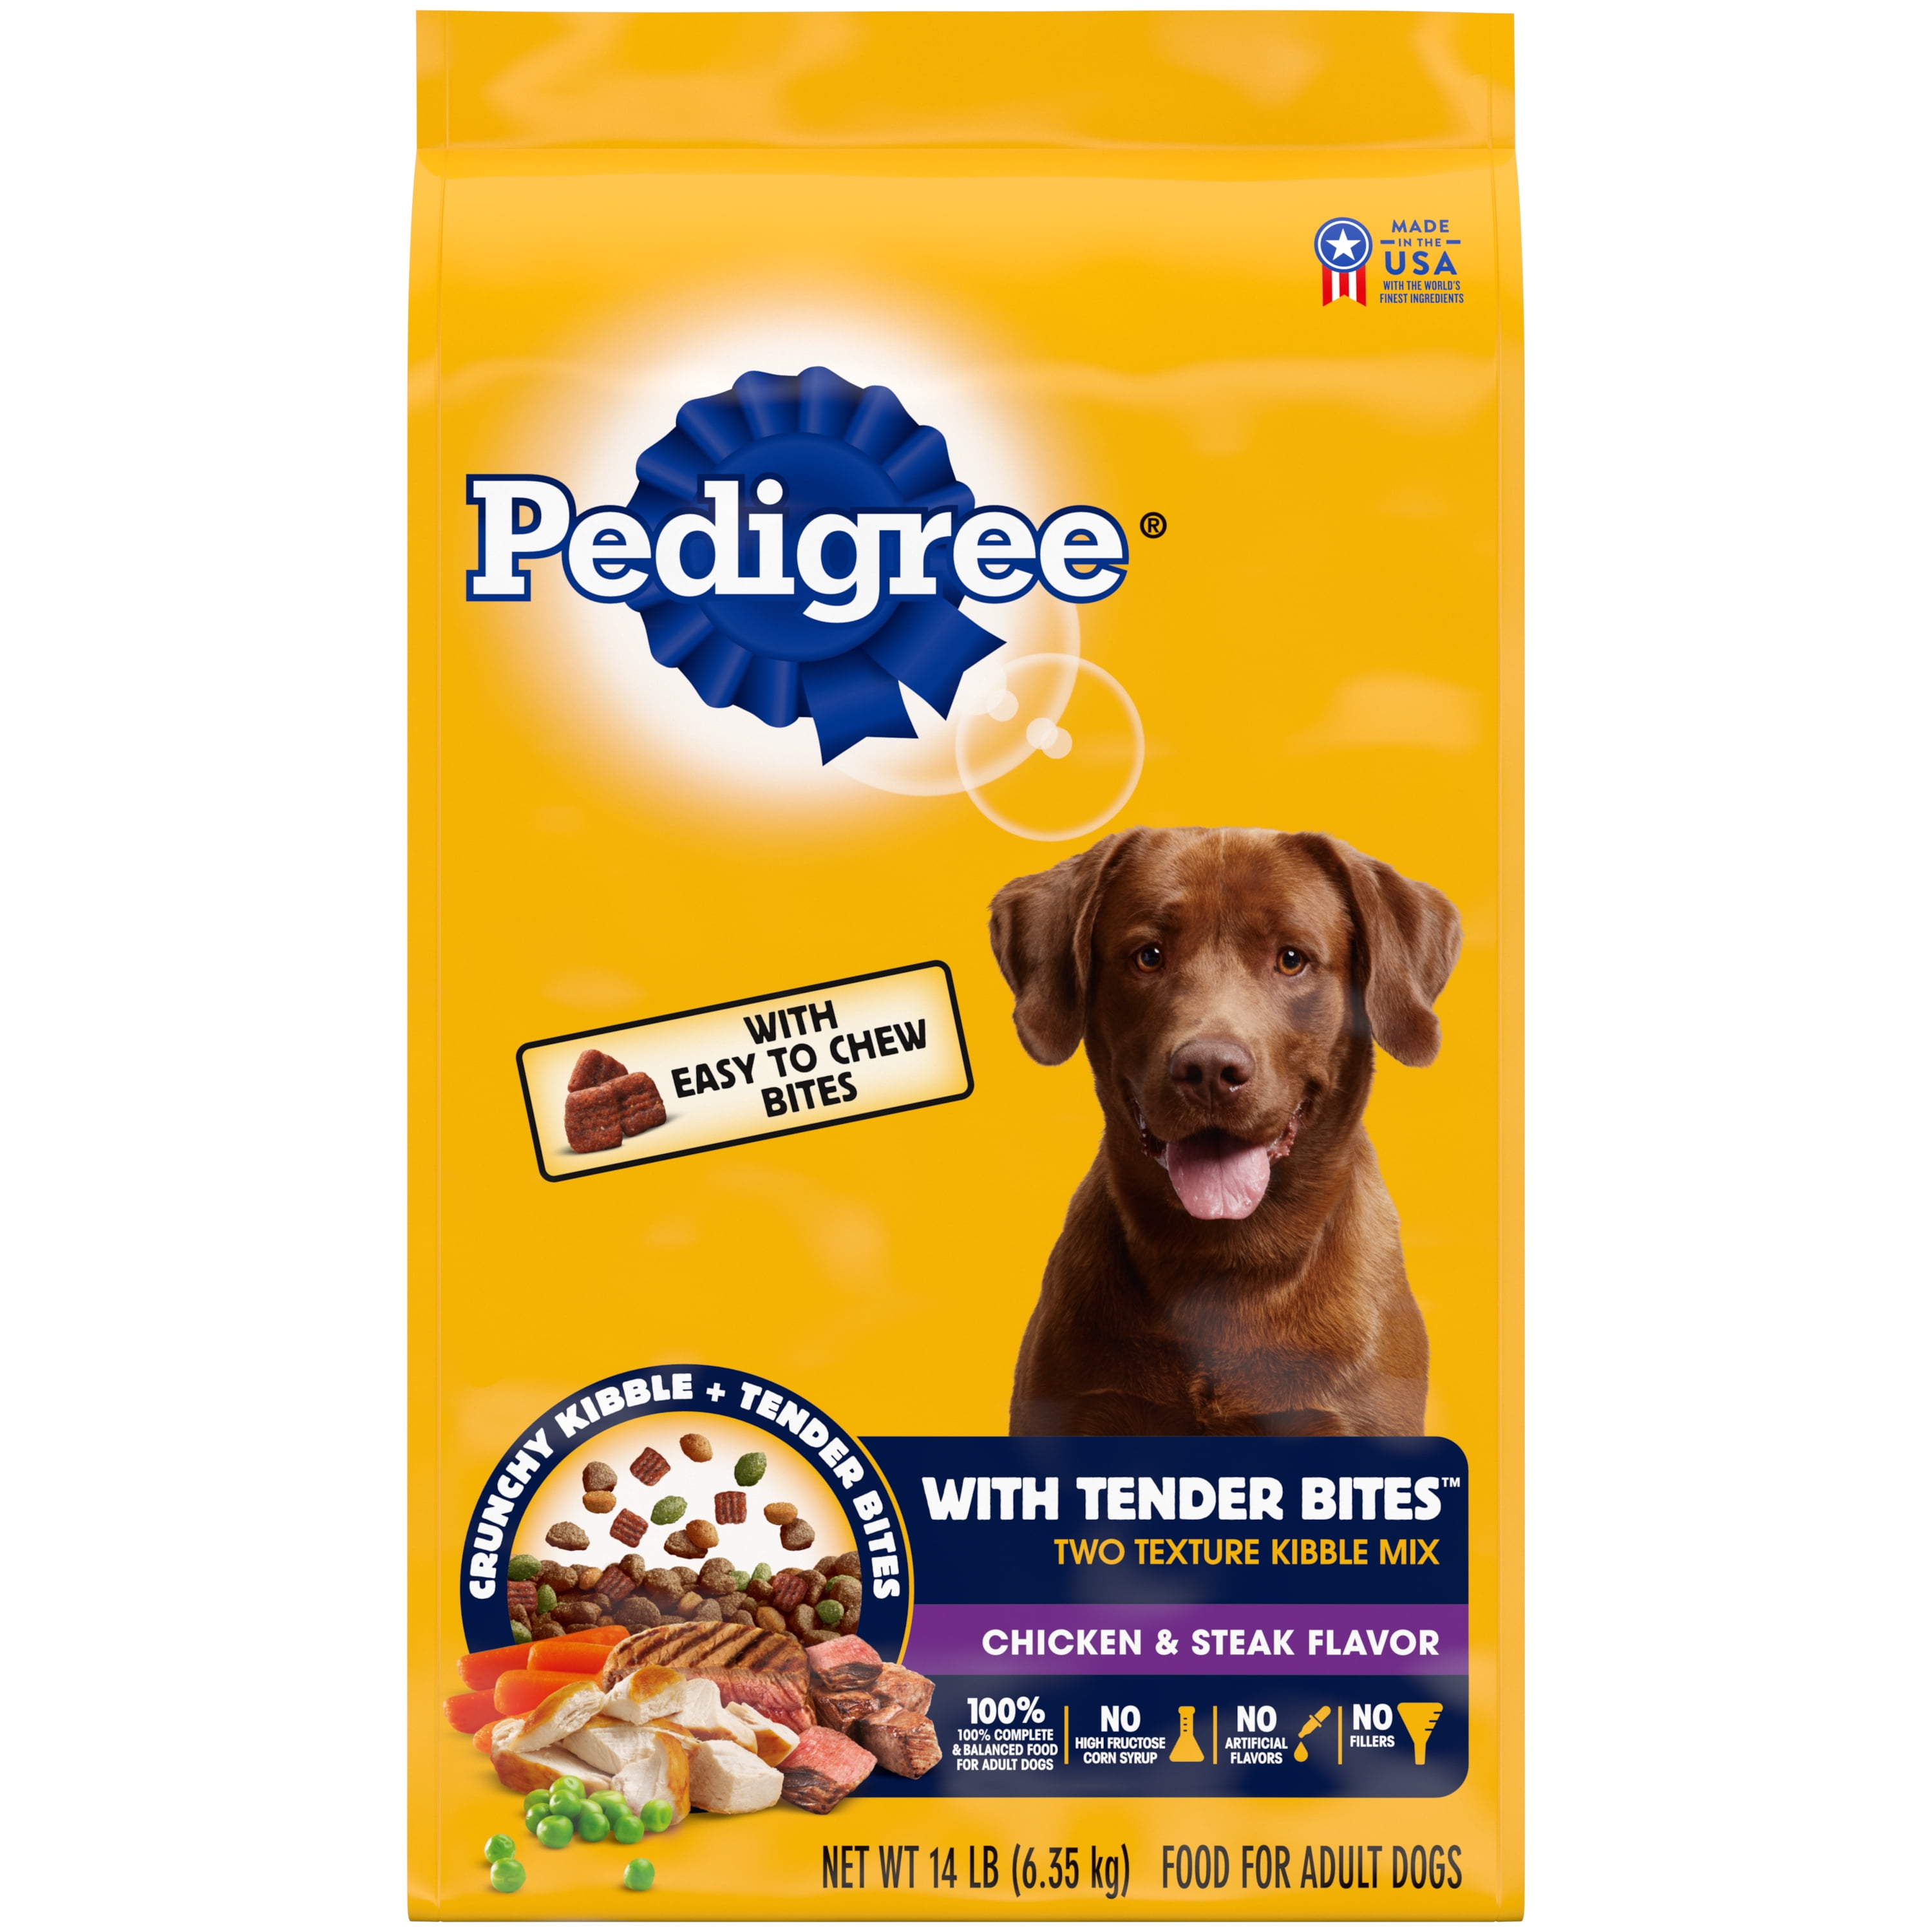 Pedigree with Tender Bites Complete Nutrition Chicken & Steak Flavor Dry Dog Food for Adult Dog, 14 lb. bag